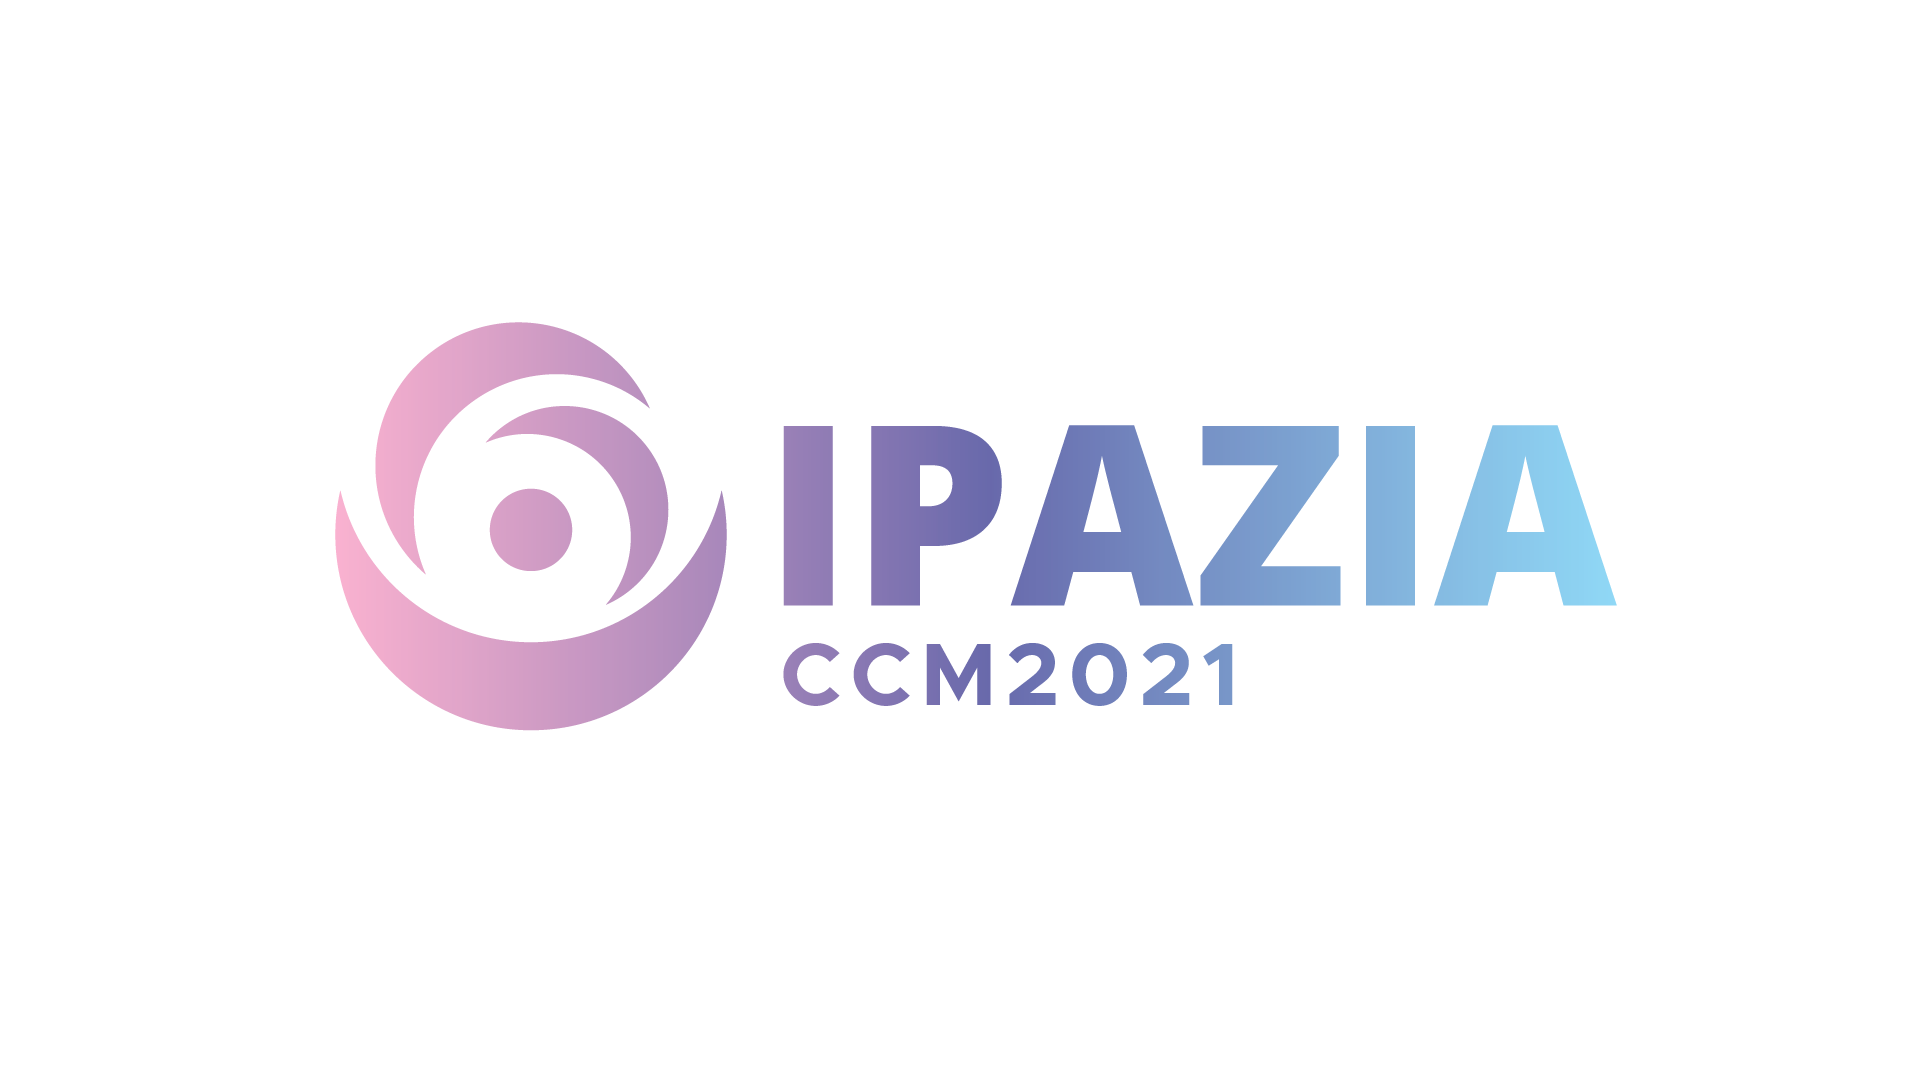 #IpaziaCcm2021, un progetto di prevenzione contro la violenza su donne e minori